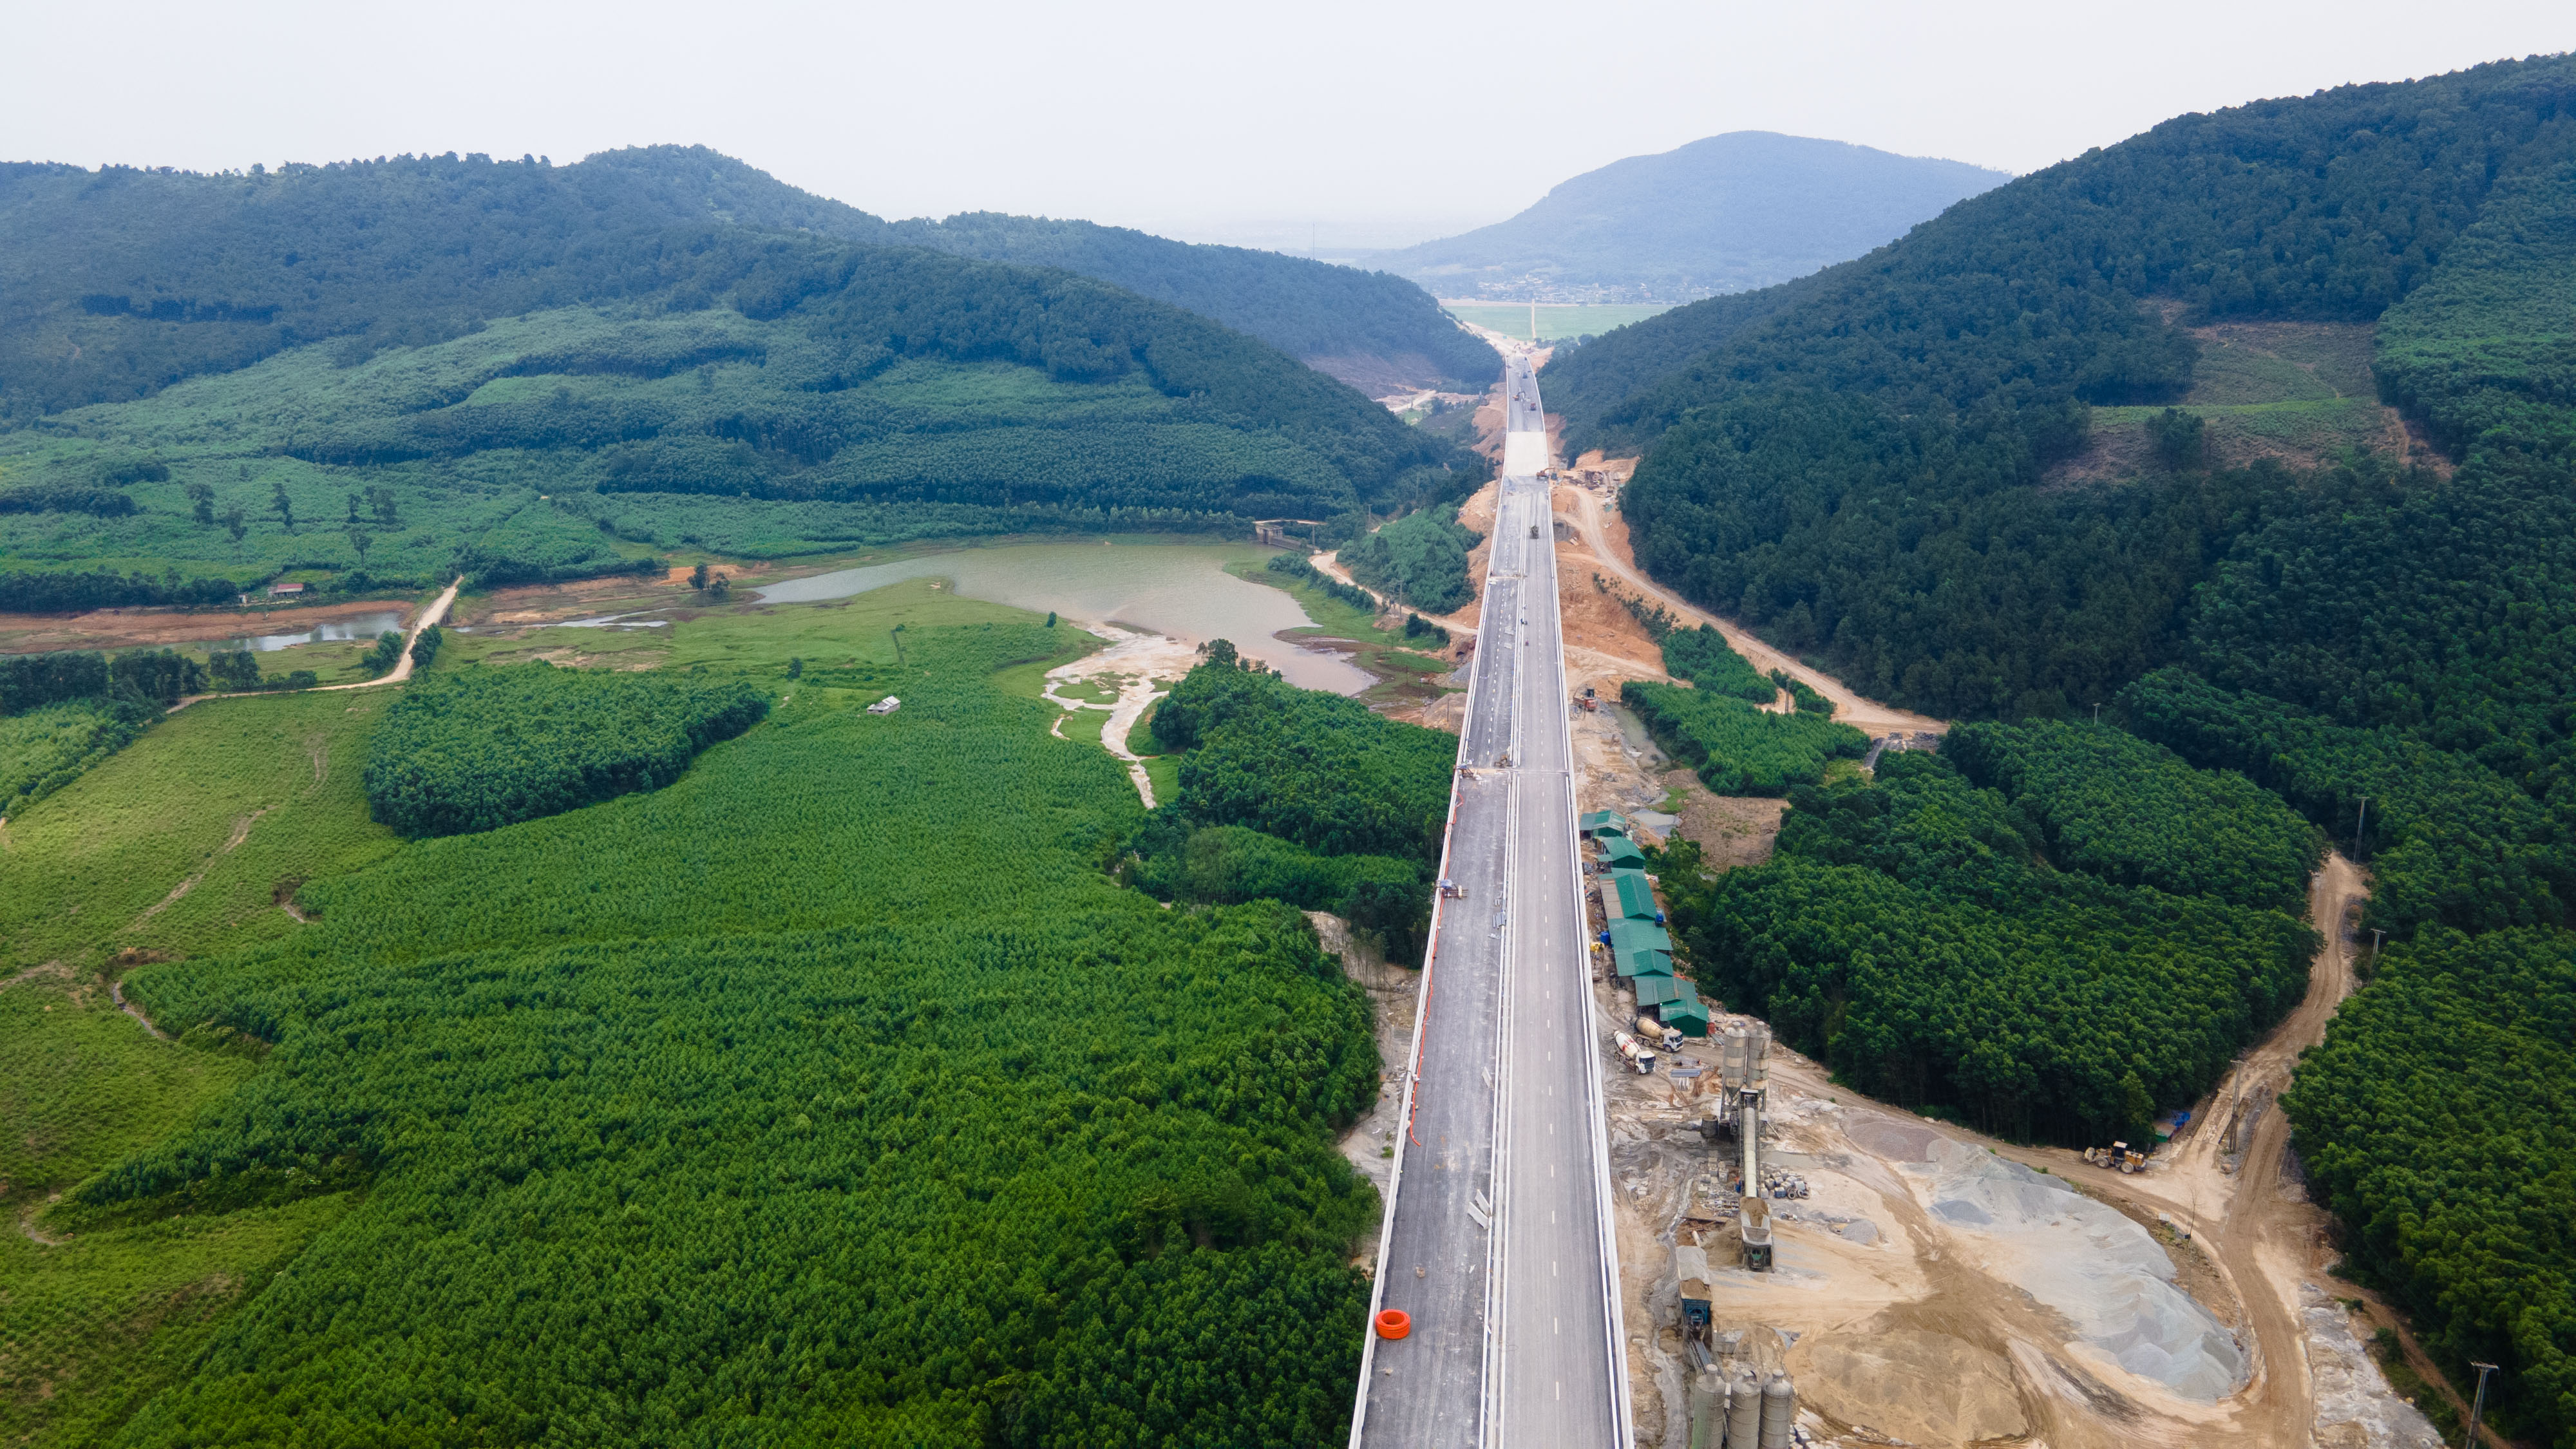 Cầu Xuân Dương 2 là 1 trong những cây cầu nằm trên cung đường đẹp nhất của tuyến cao tốc Bắc - Nam đi qua xứ Nghệ. Xung quanh là quang cảnh&nbsp;đồi núi và hồ nước trập trùng.